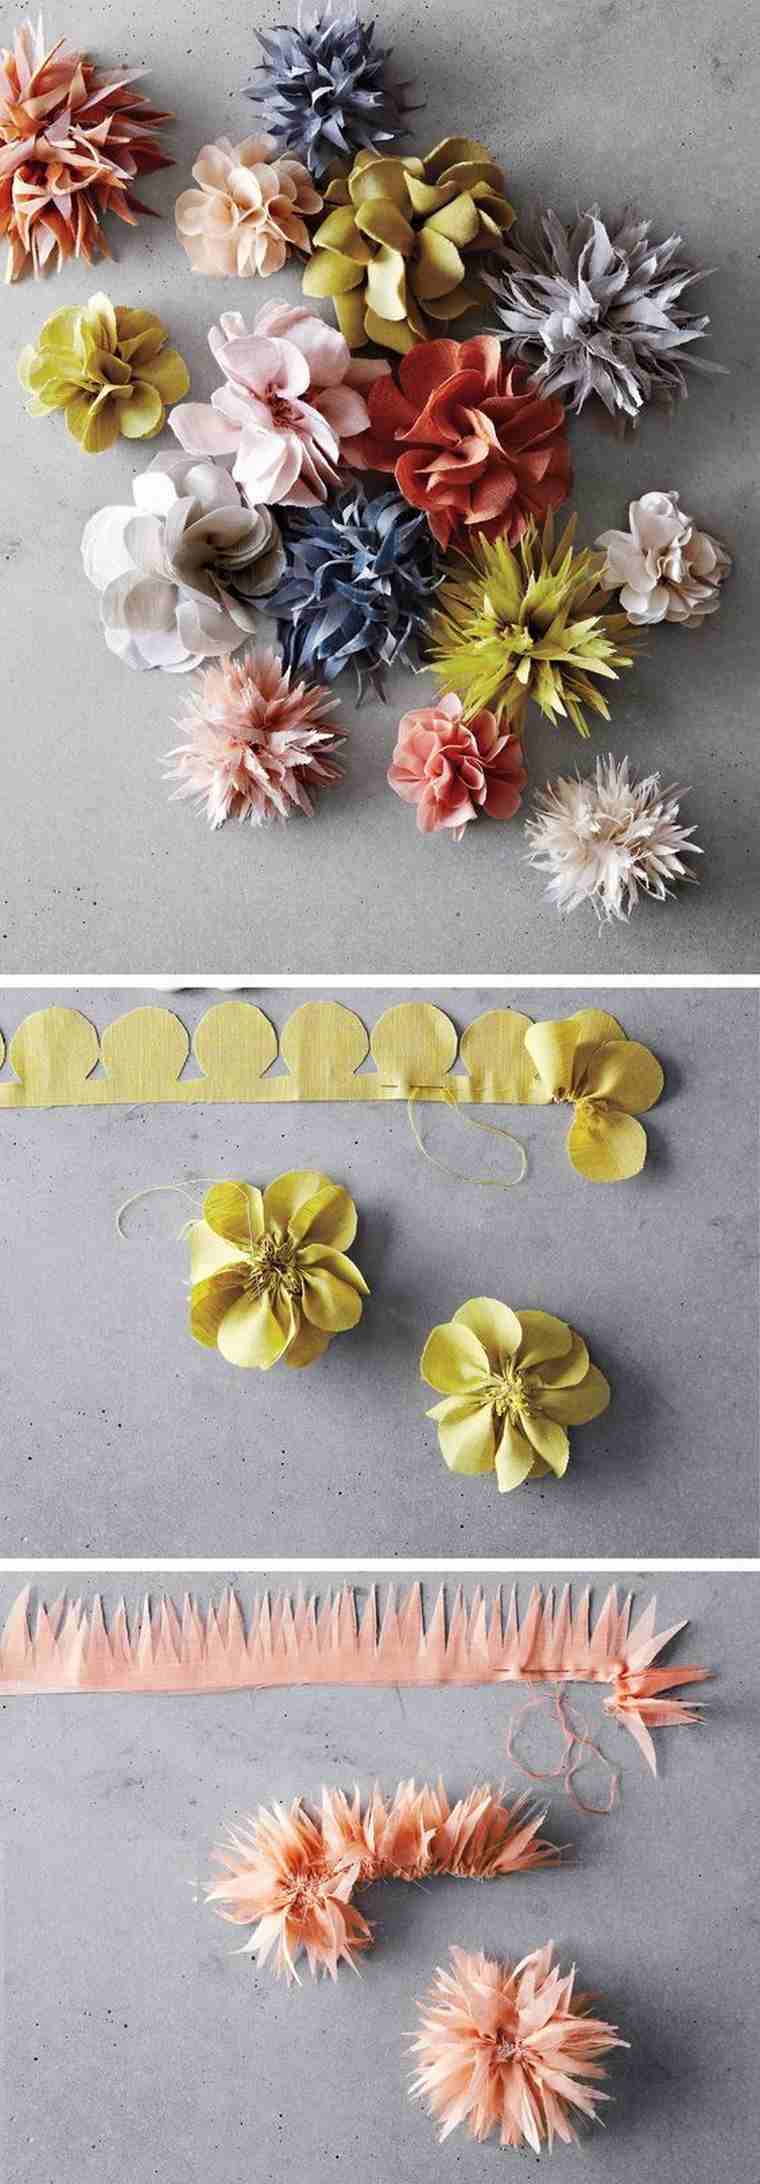 自分で生地の花を作るのが簡単なDIY縫製プロジェクトのアイデア